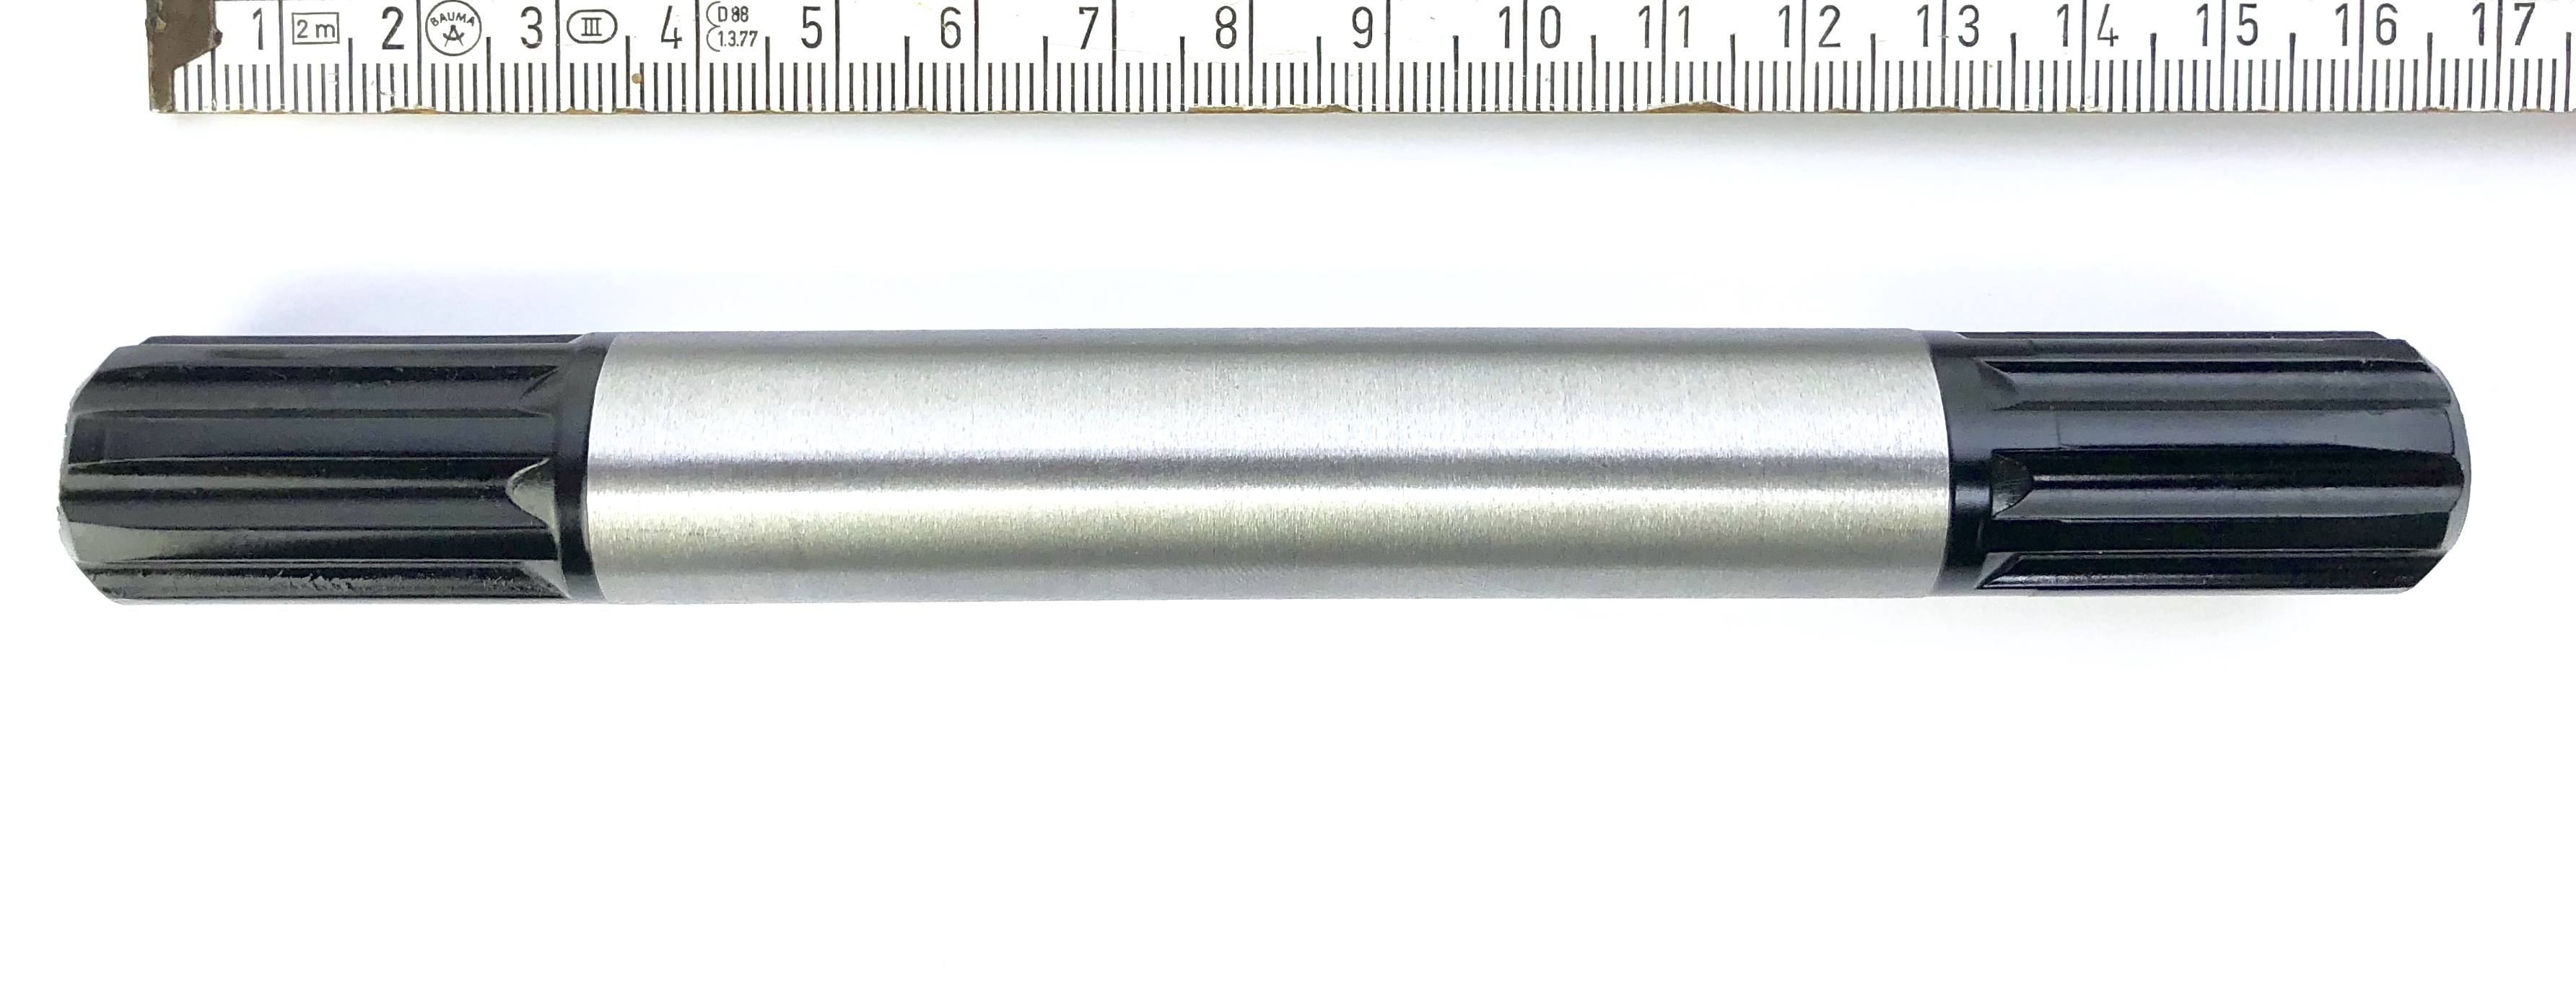 Spezialteil: Tretachse 165 mm breit, Stahl